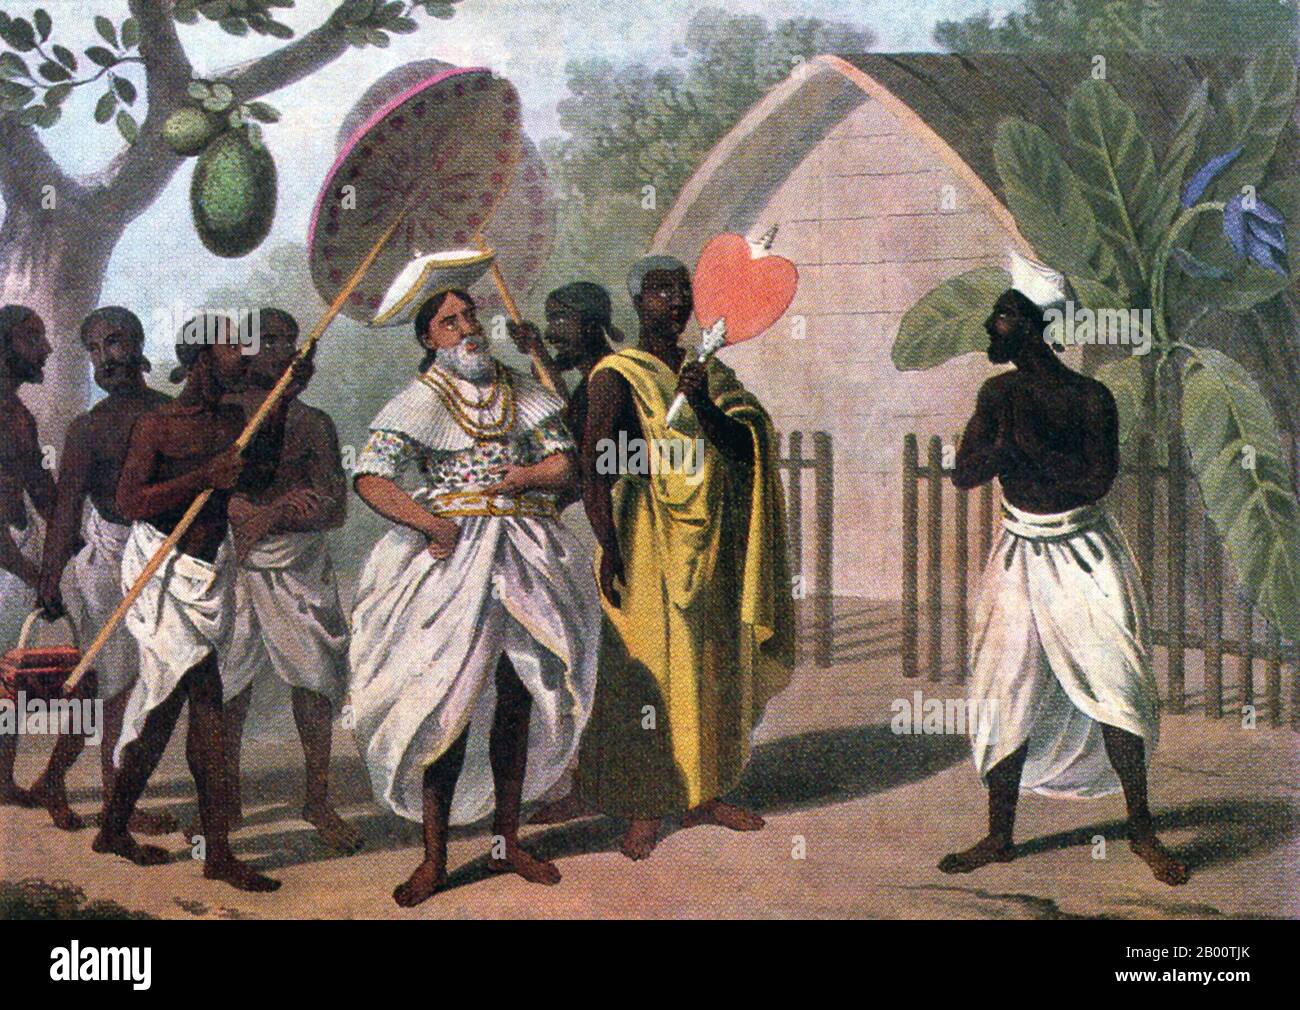 Sri Lanka: 'Un capo Kandyan e un monaco buddista'. Dipinto di John Davy (1790-1868), 1821. Nel 1592 Kandy divenne la capitale dell'ultimo regno indipendente rimasto nello Sri Lanka dopo che le regioni costiere erano state conquistate dai portoghesi. Kandy rimase indipendente fino all'inizio del XIX secolo. Nella seconda guerra del Kandyan, gli inglesi non incontrarono resistenza e raggiunsero la città il 10 febbraio 1815. Il 2 marzo 1815 è stato firmato un trattato noto come Convenzione di Kandyan tra gli inglesi e i Radalas (aristocratici di Kandyan). Con questo trattato, Kandy divenne un protettorato britannico. Foto Stock